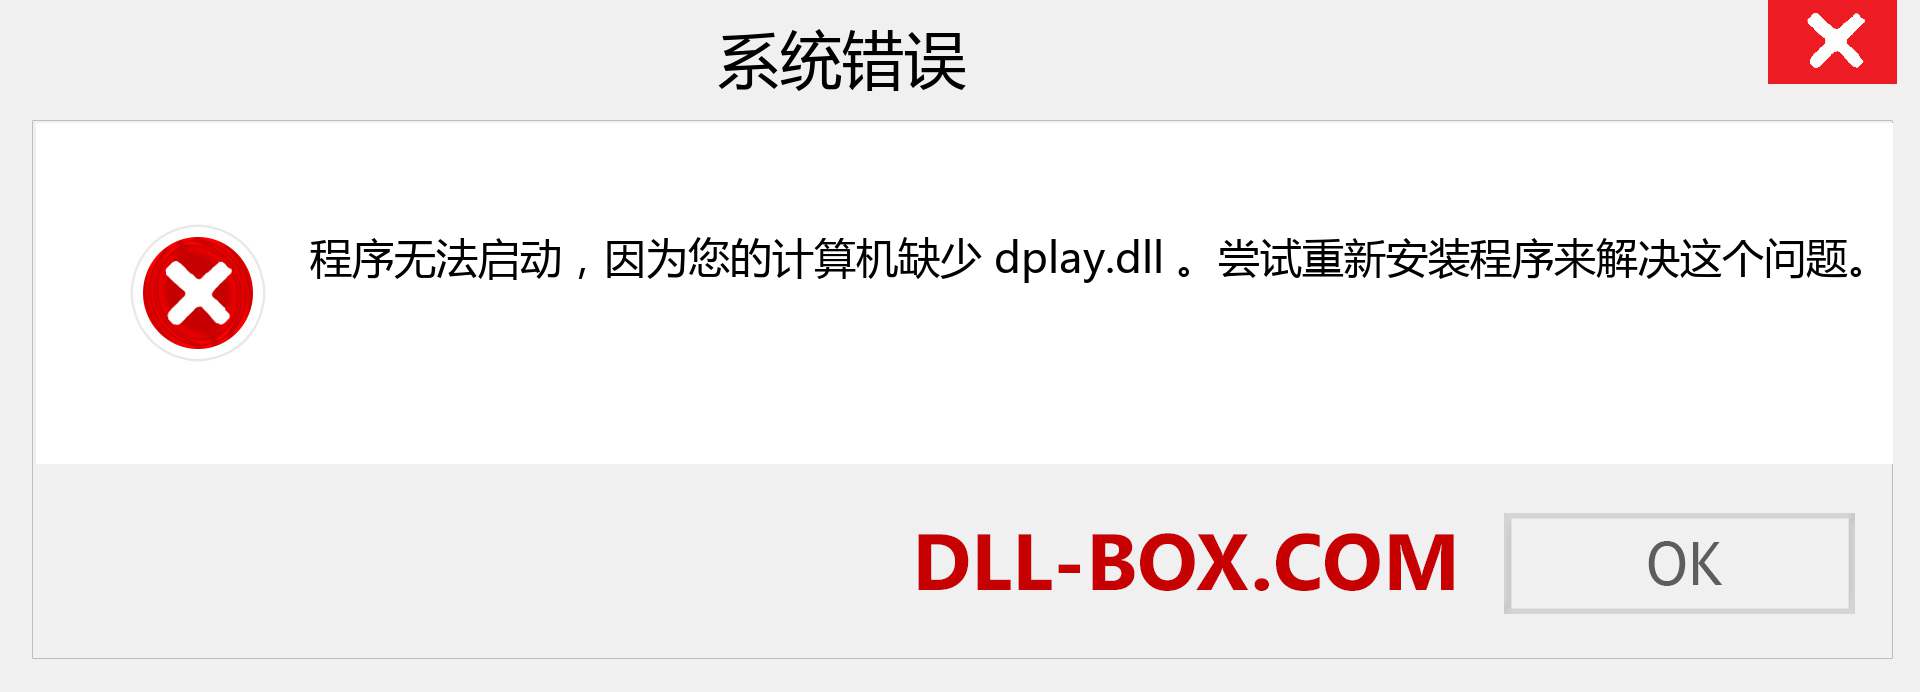 dplay.dll 文件丢失？。 适用于 Windows 7、8、10 的下载 - 修复 Windows、照片、图像上的 dplay dll 丢失错误